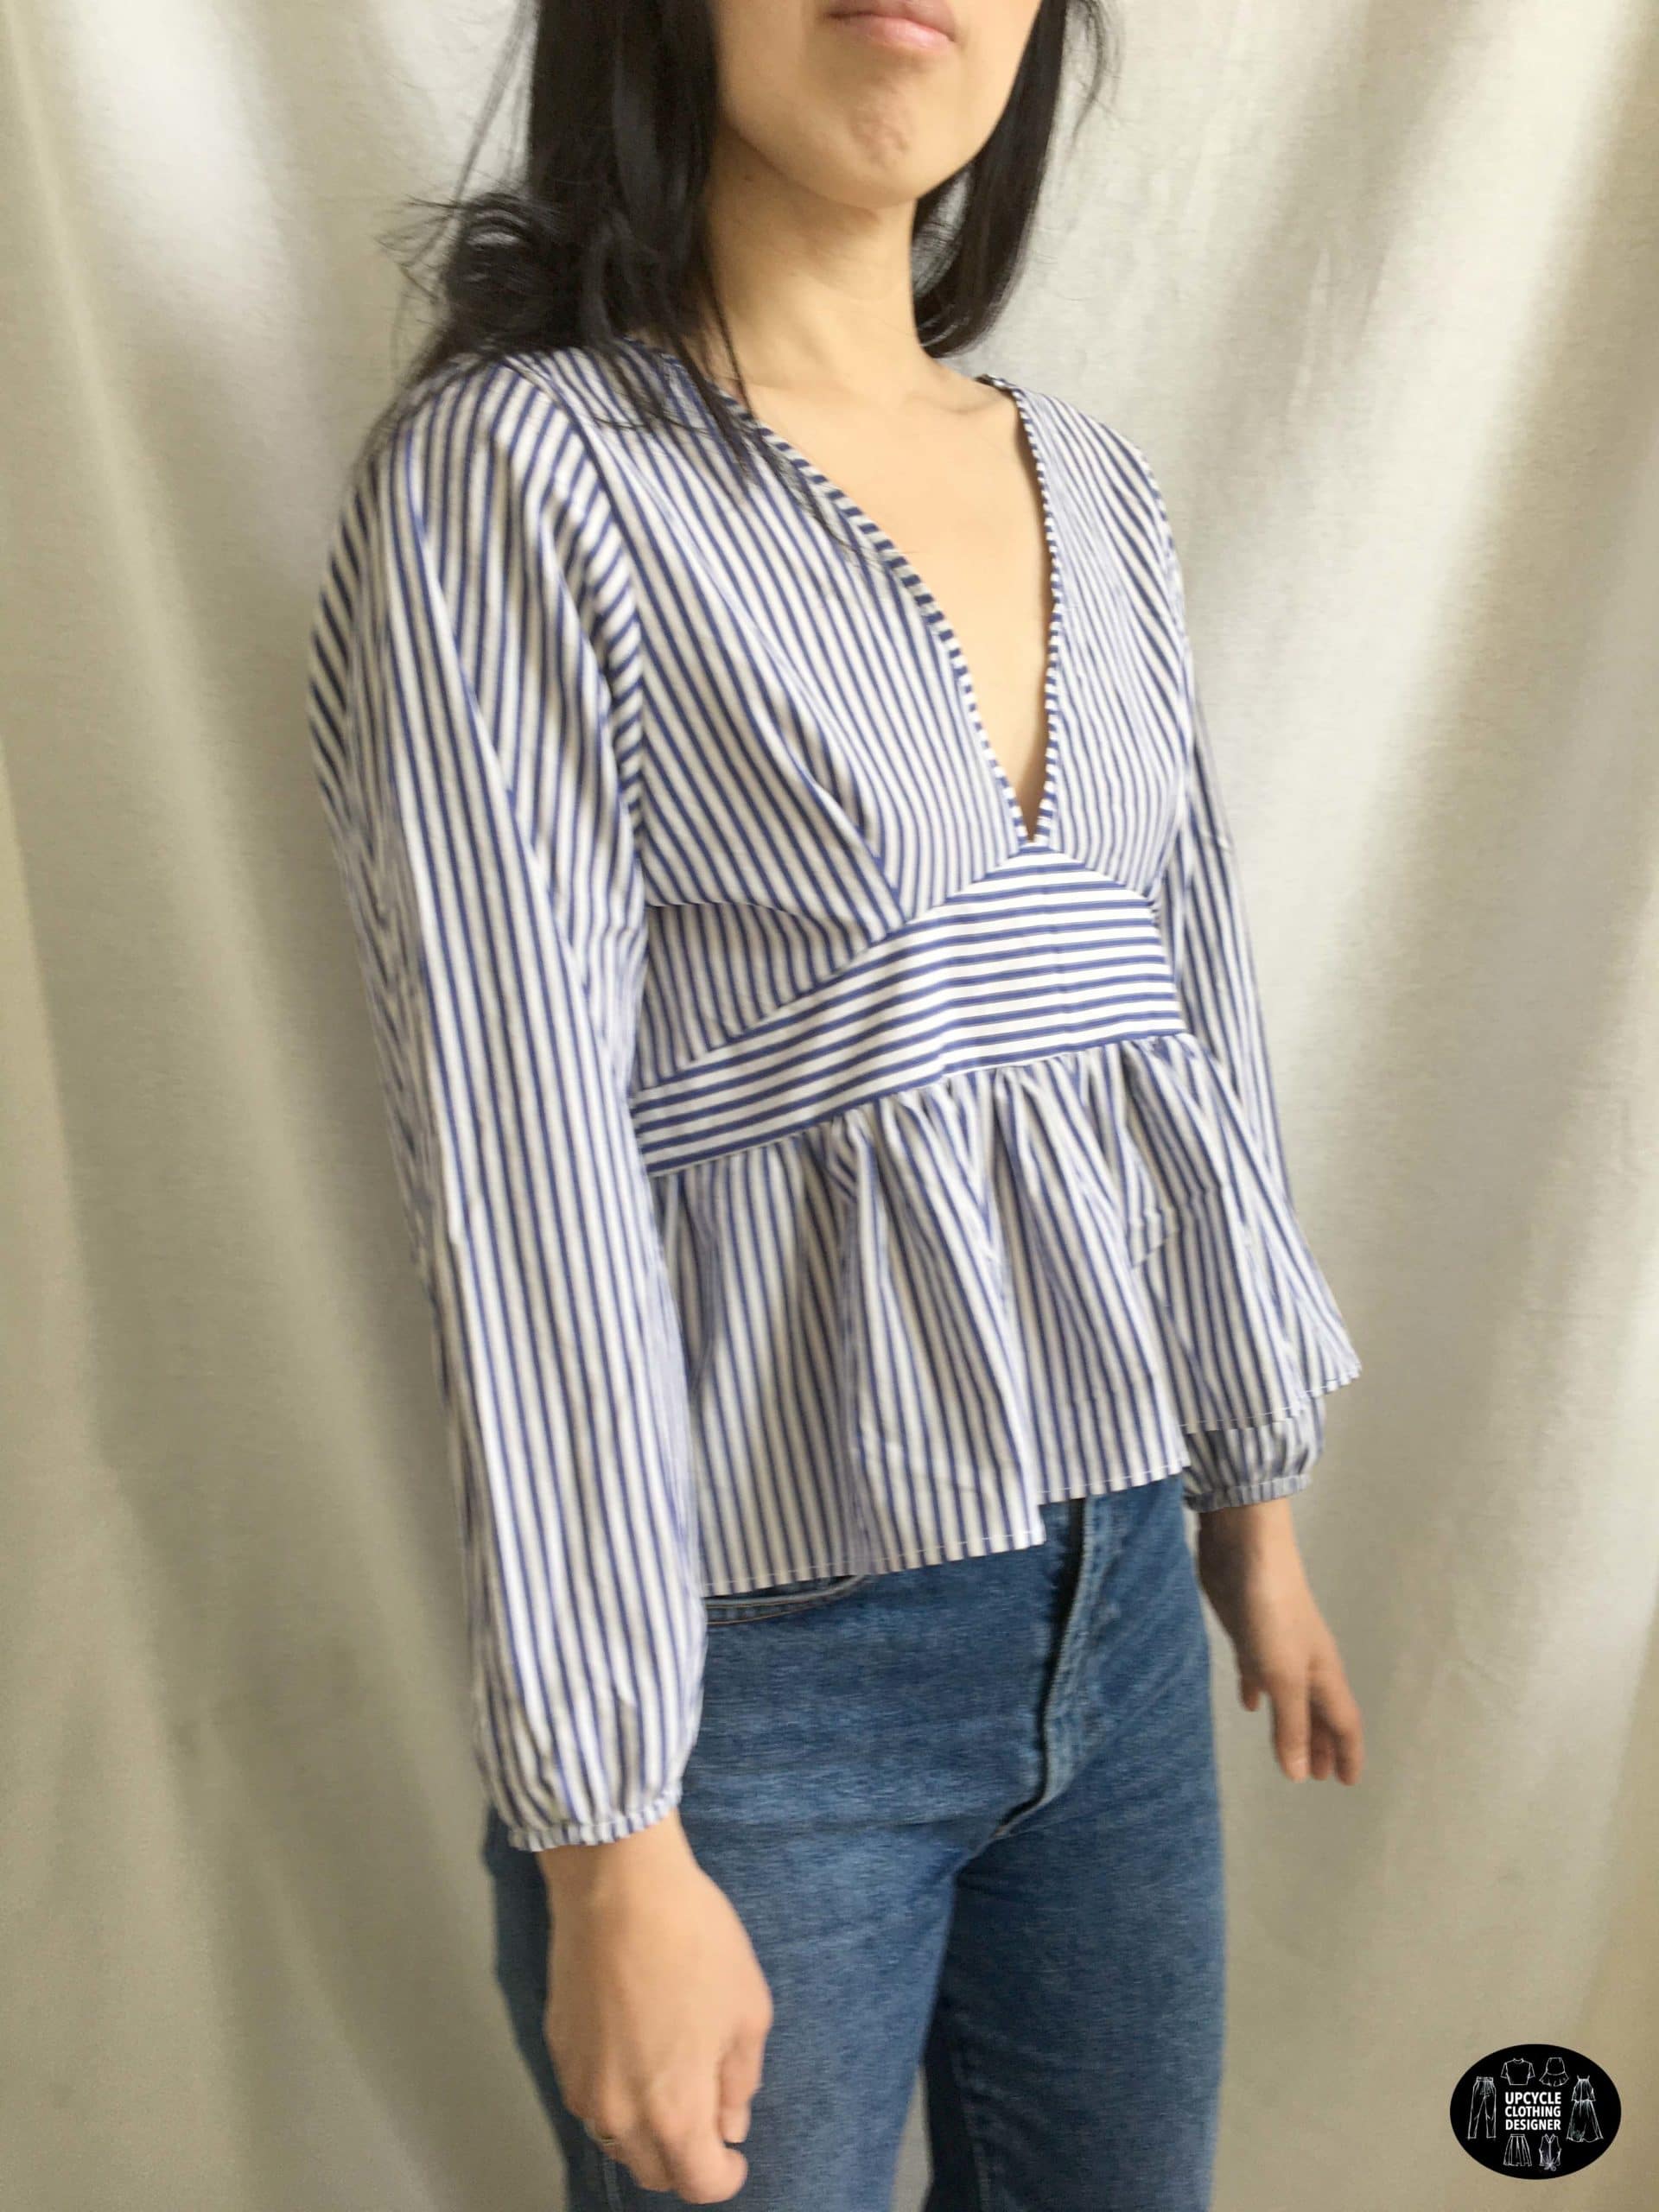 Peplum blouse from dress shirt sideview